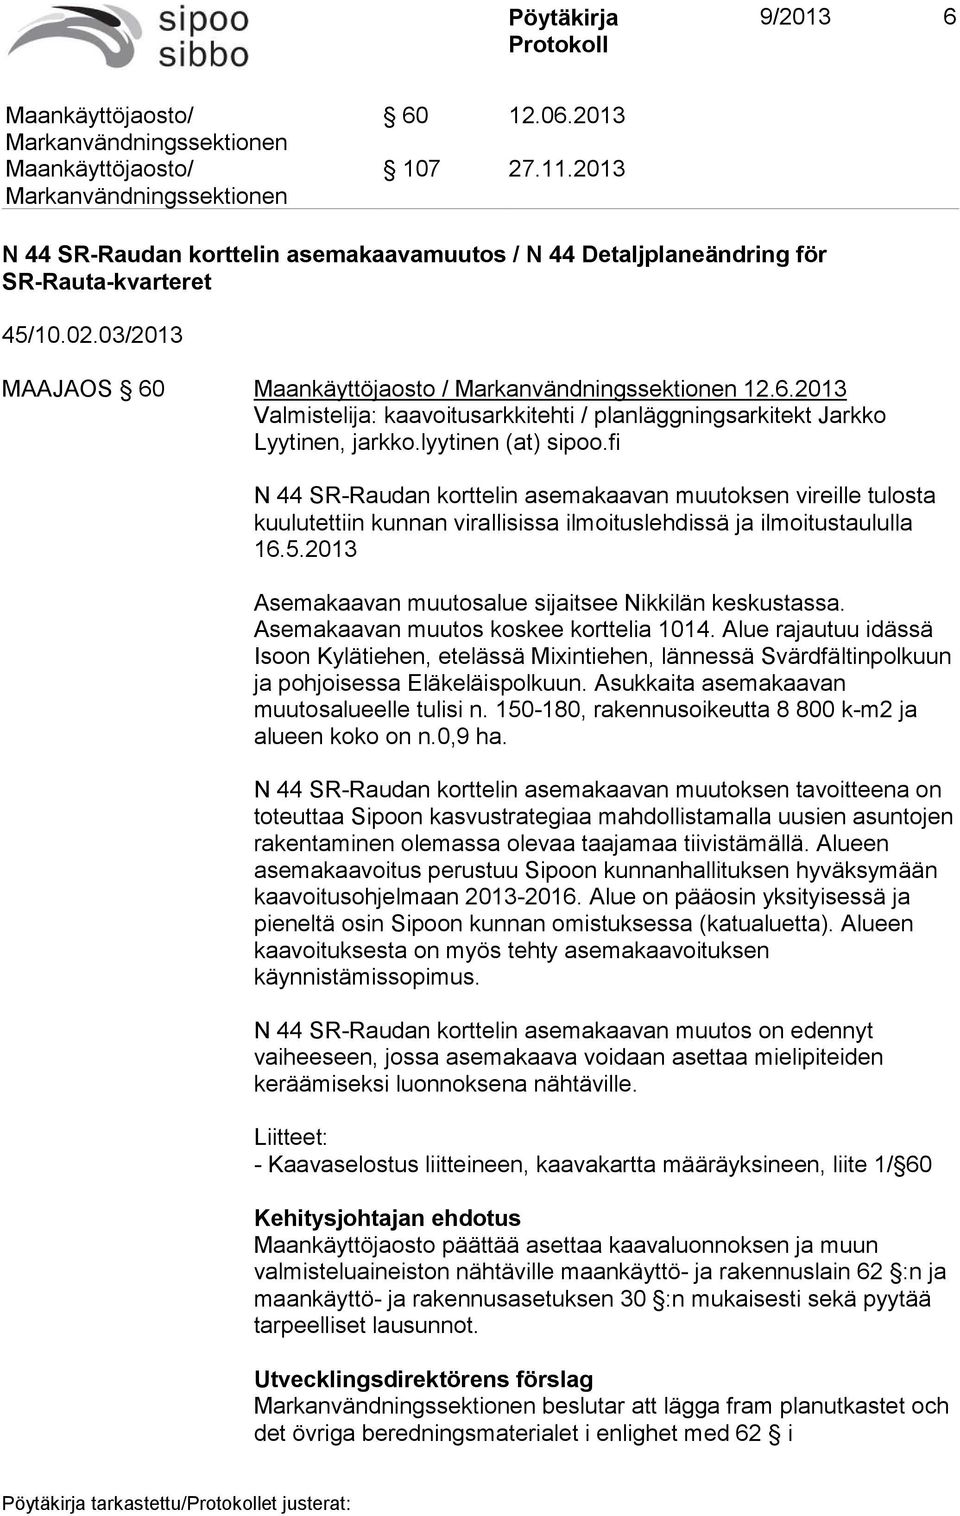 2013 Asemakaavan muutosalue sijaitsee Nikkilän keskustassa. Asemakaavan muutos koskee korttelia 1014.